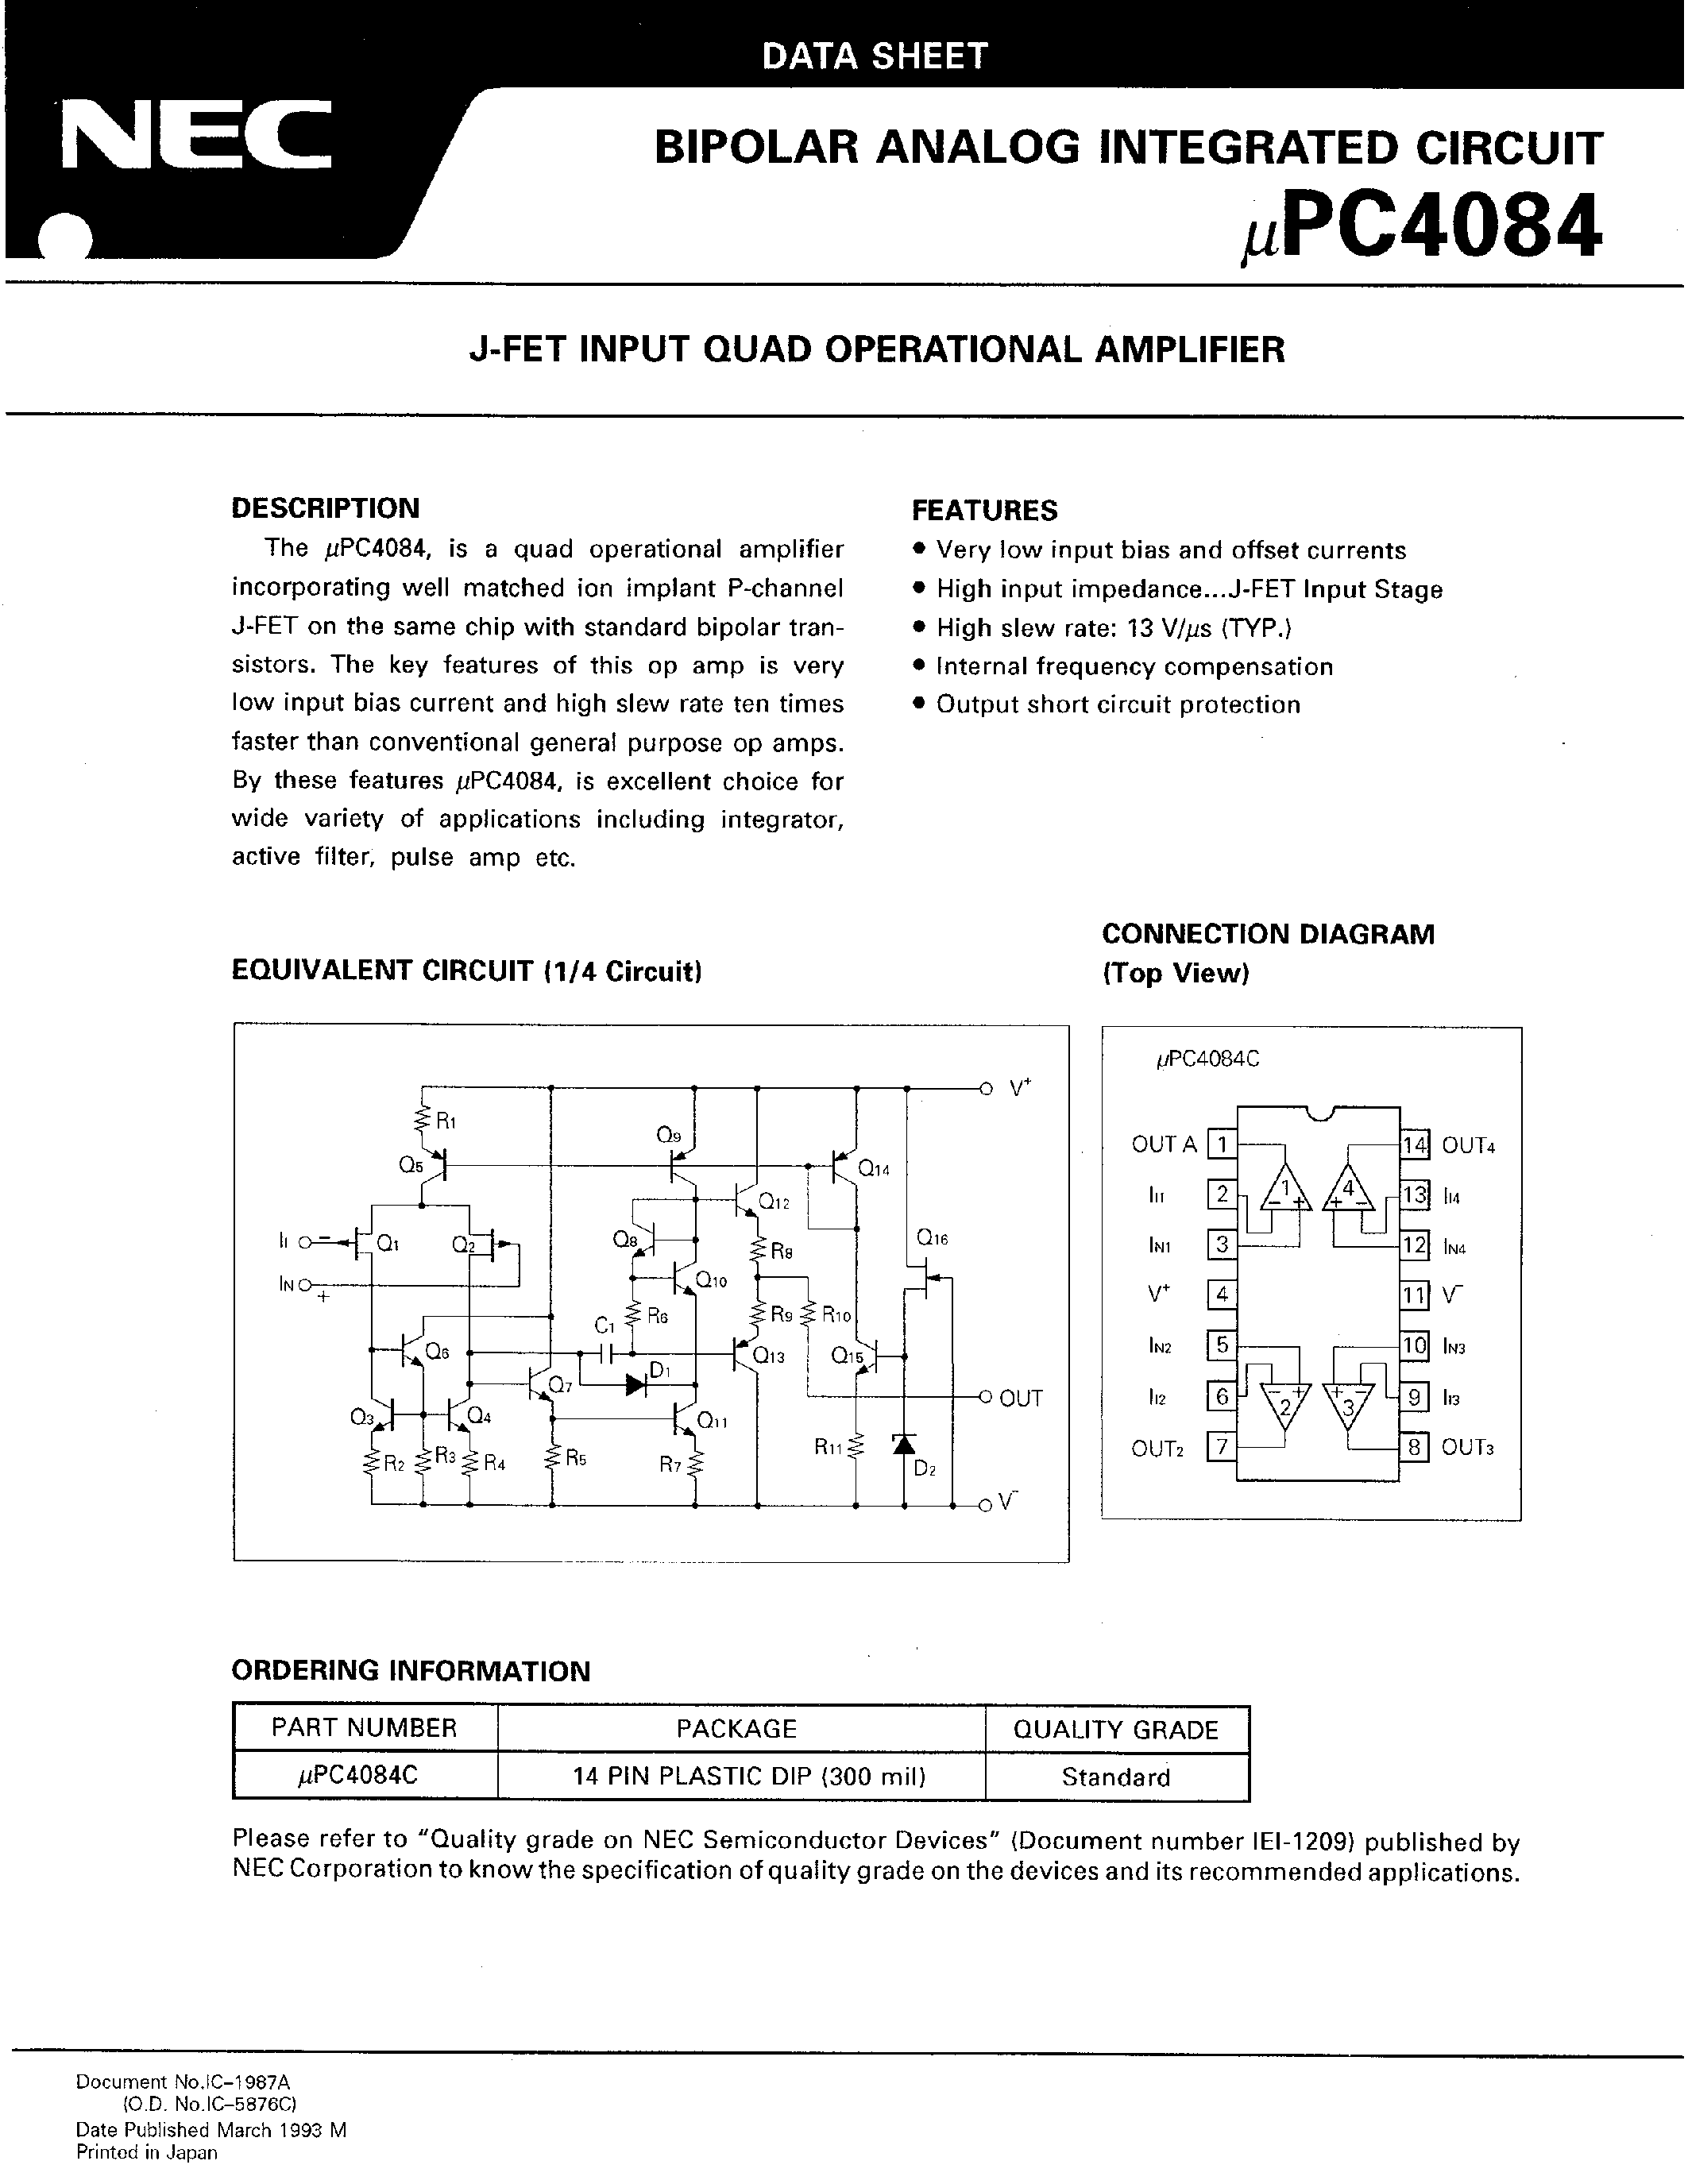 Даташит UPC4084C - J-FET INPUT QUAD OPERATIONAL AMPLIFIER страница 1